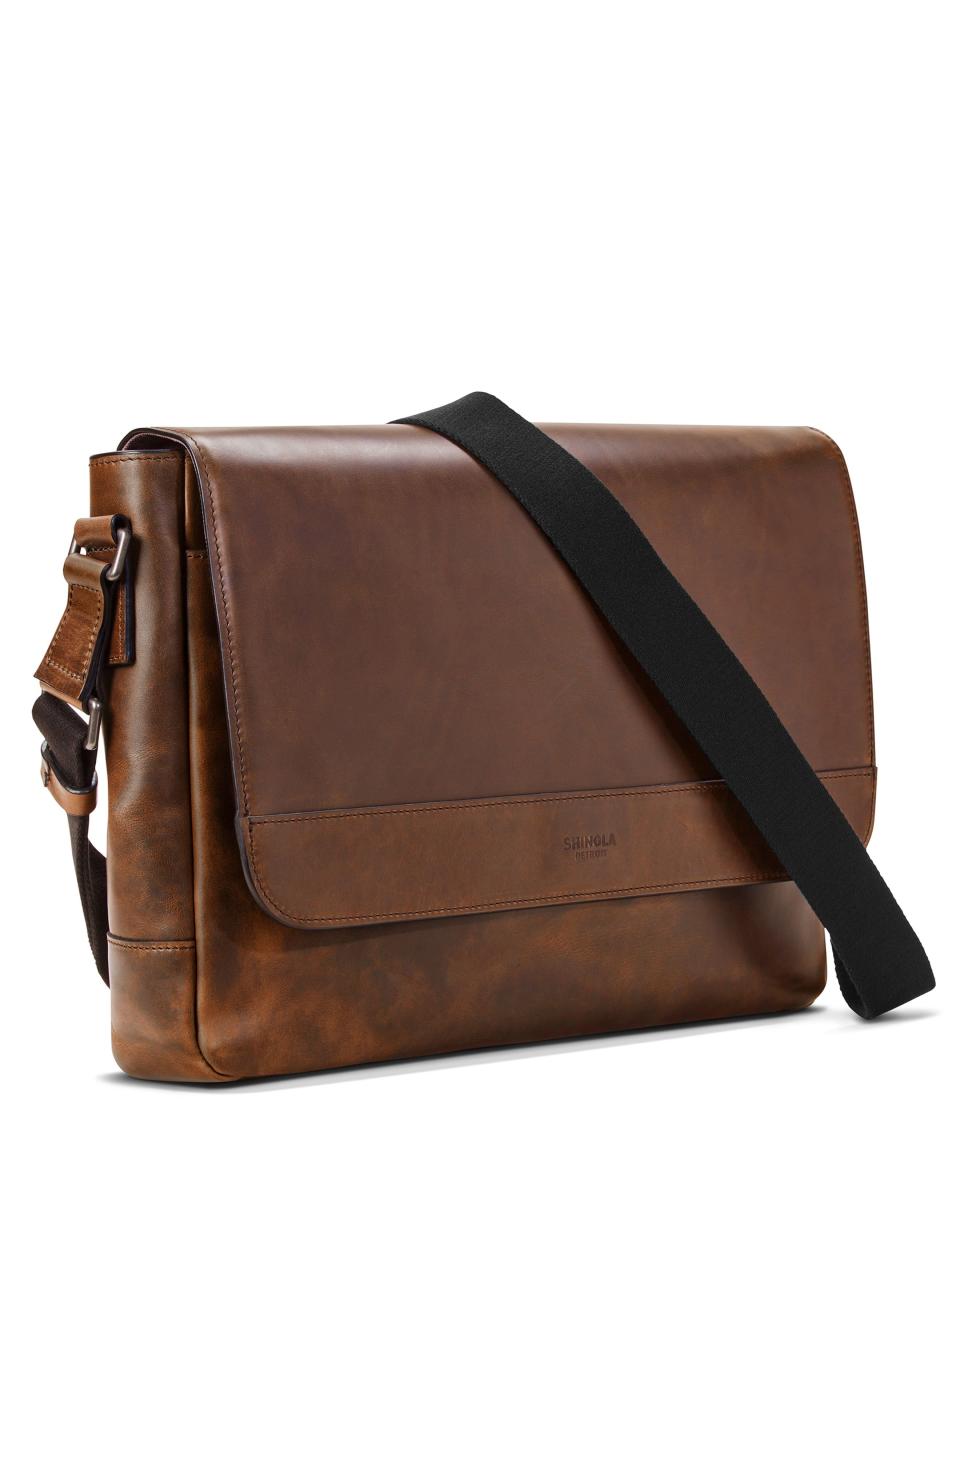 Navigator Leather Messenger Bag